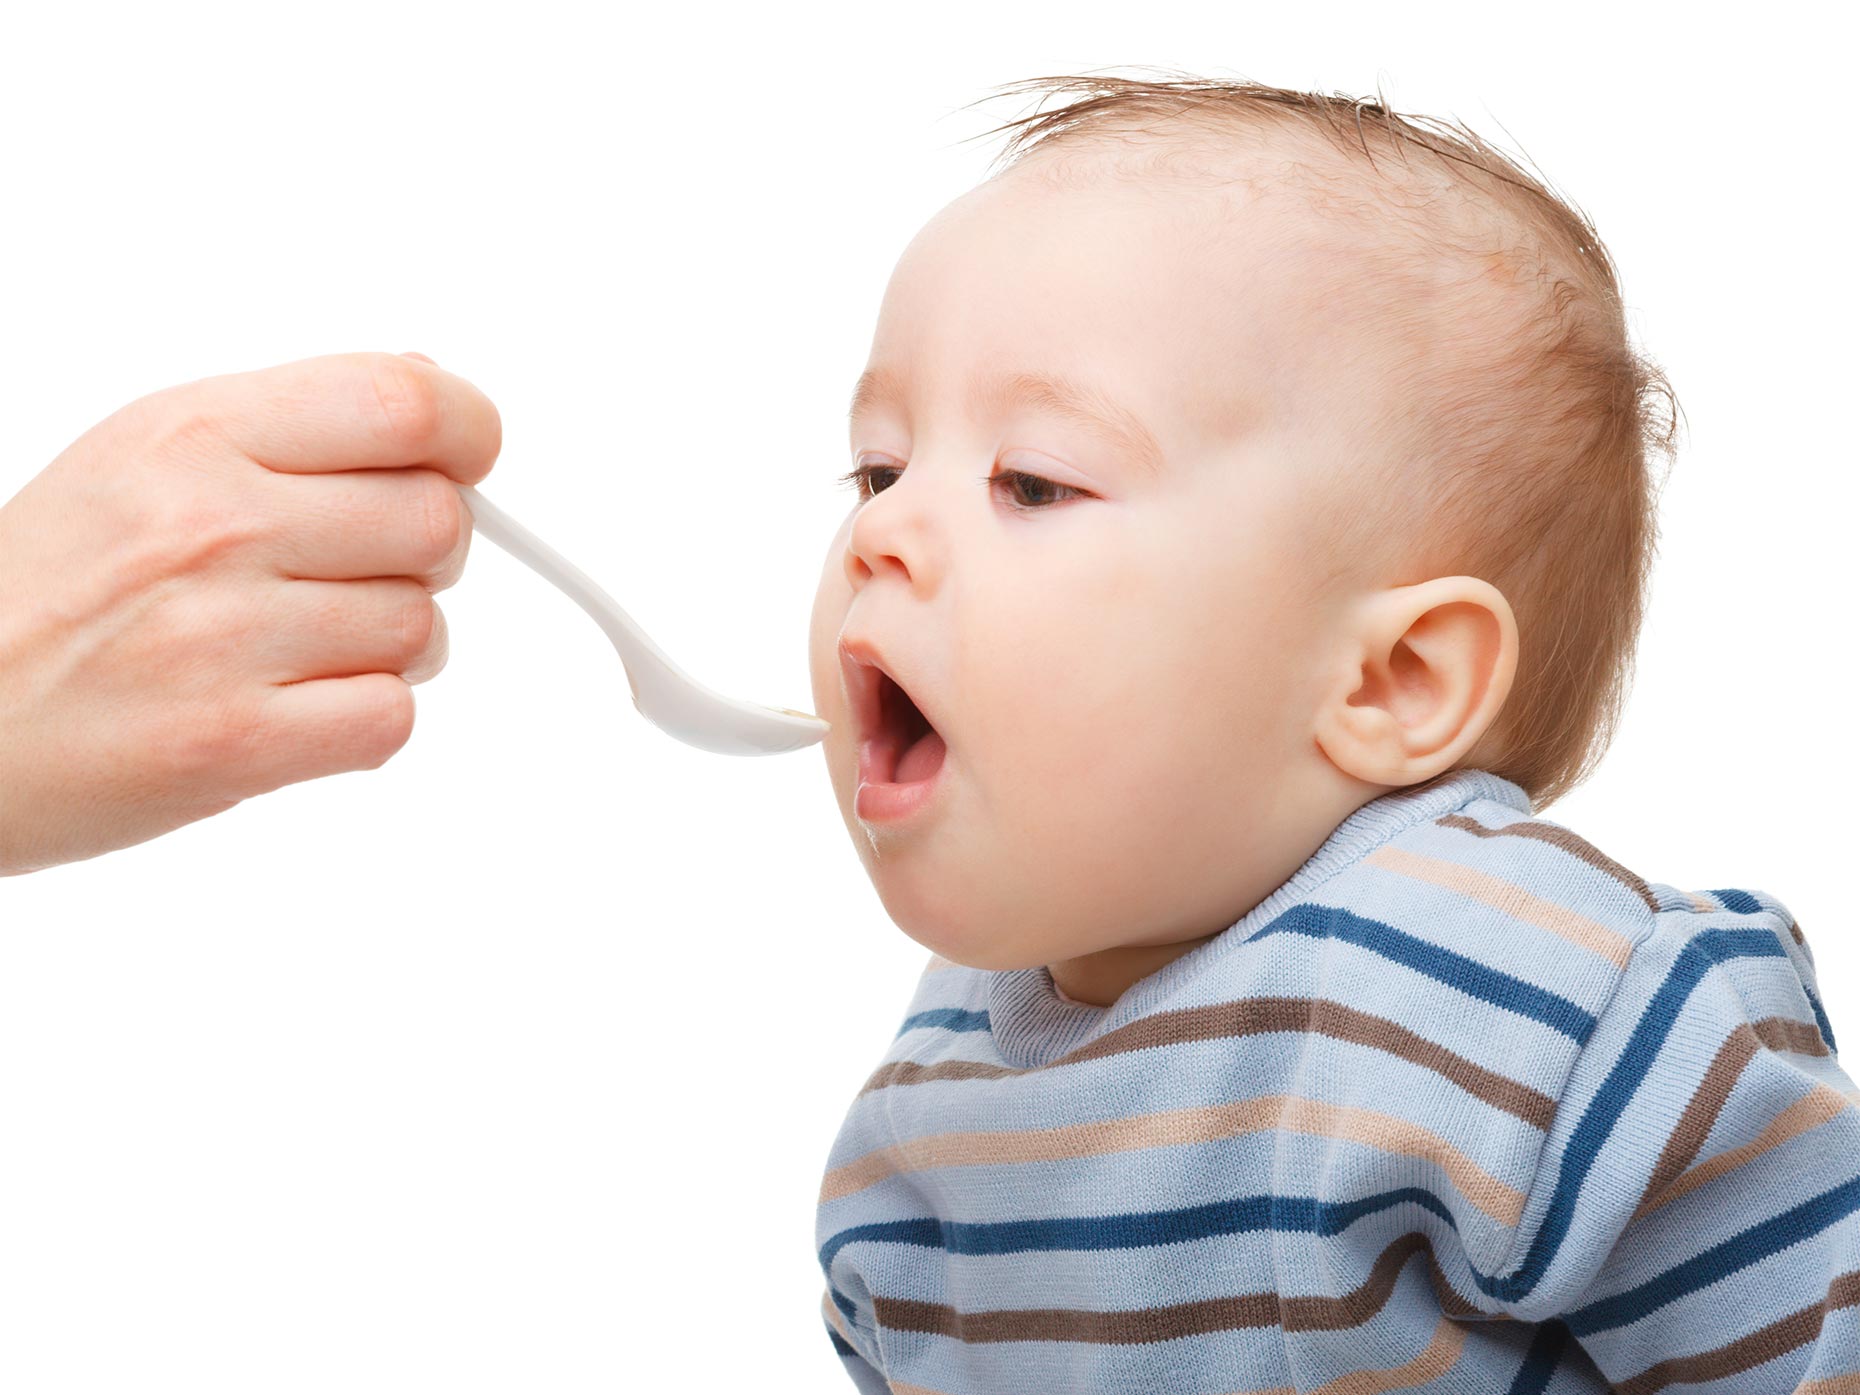 Cucchiaino per neonato: quale scegliere